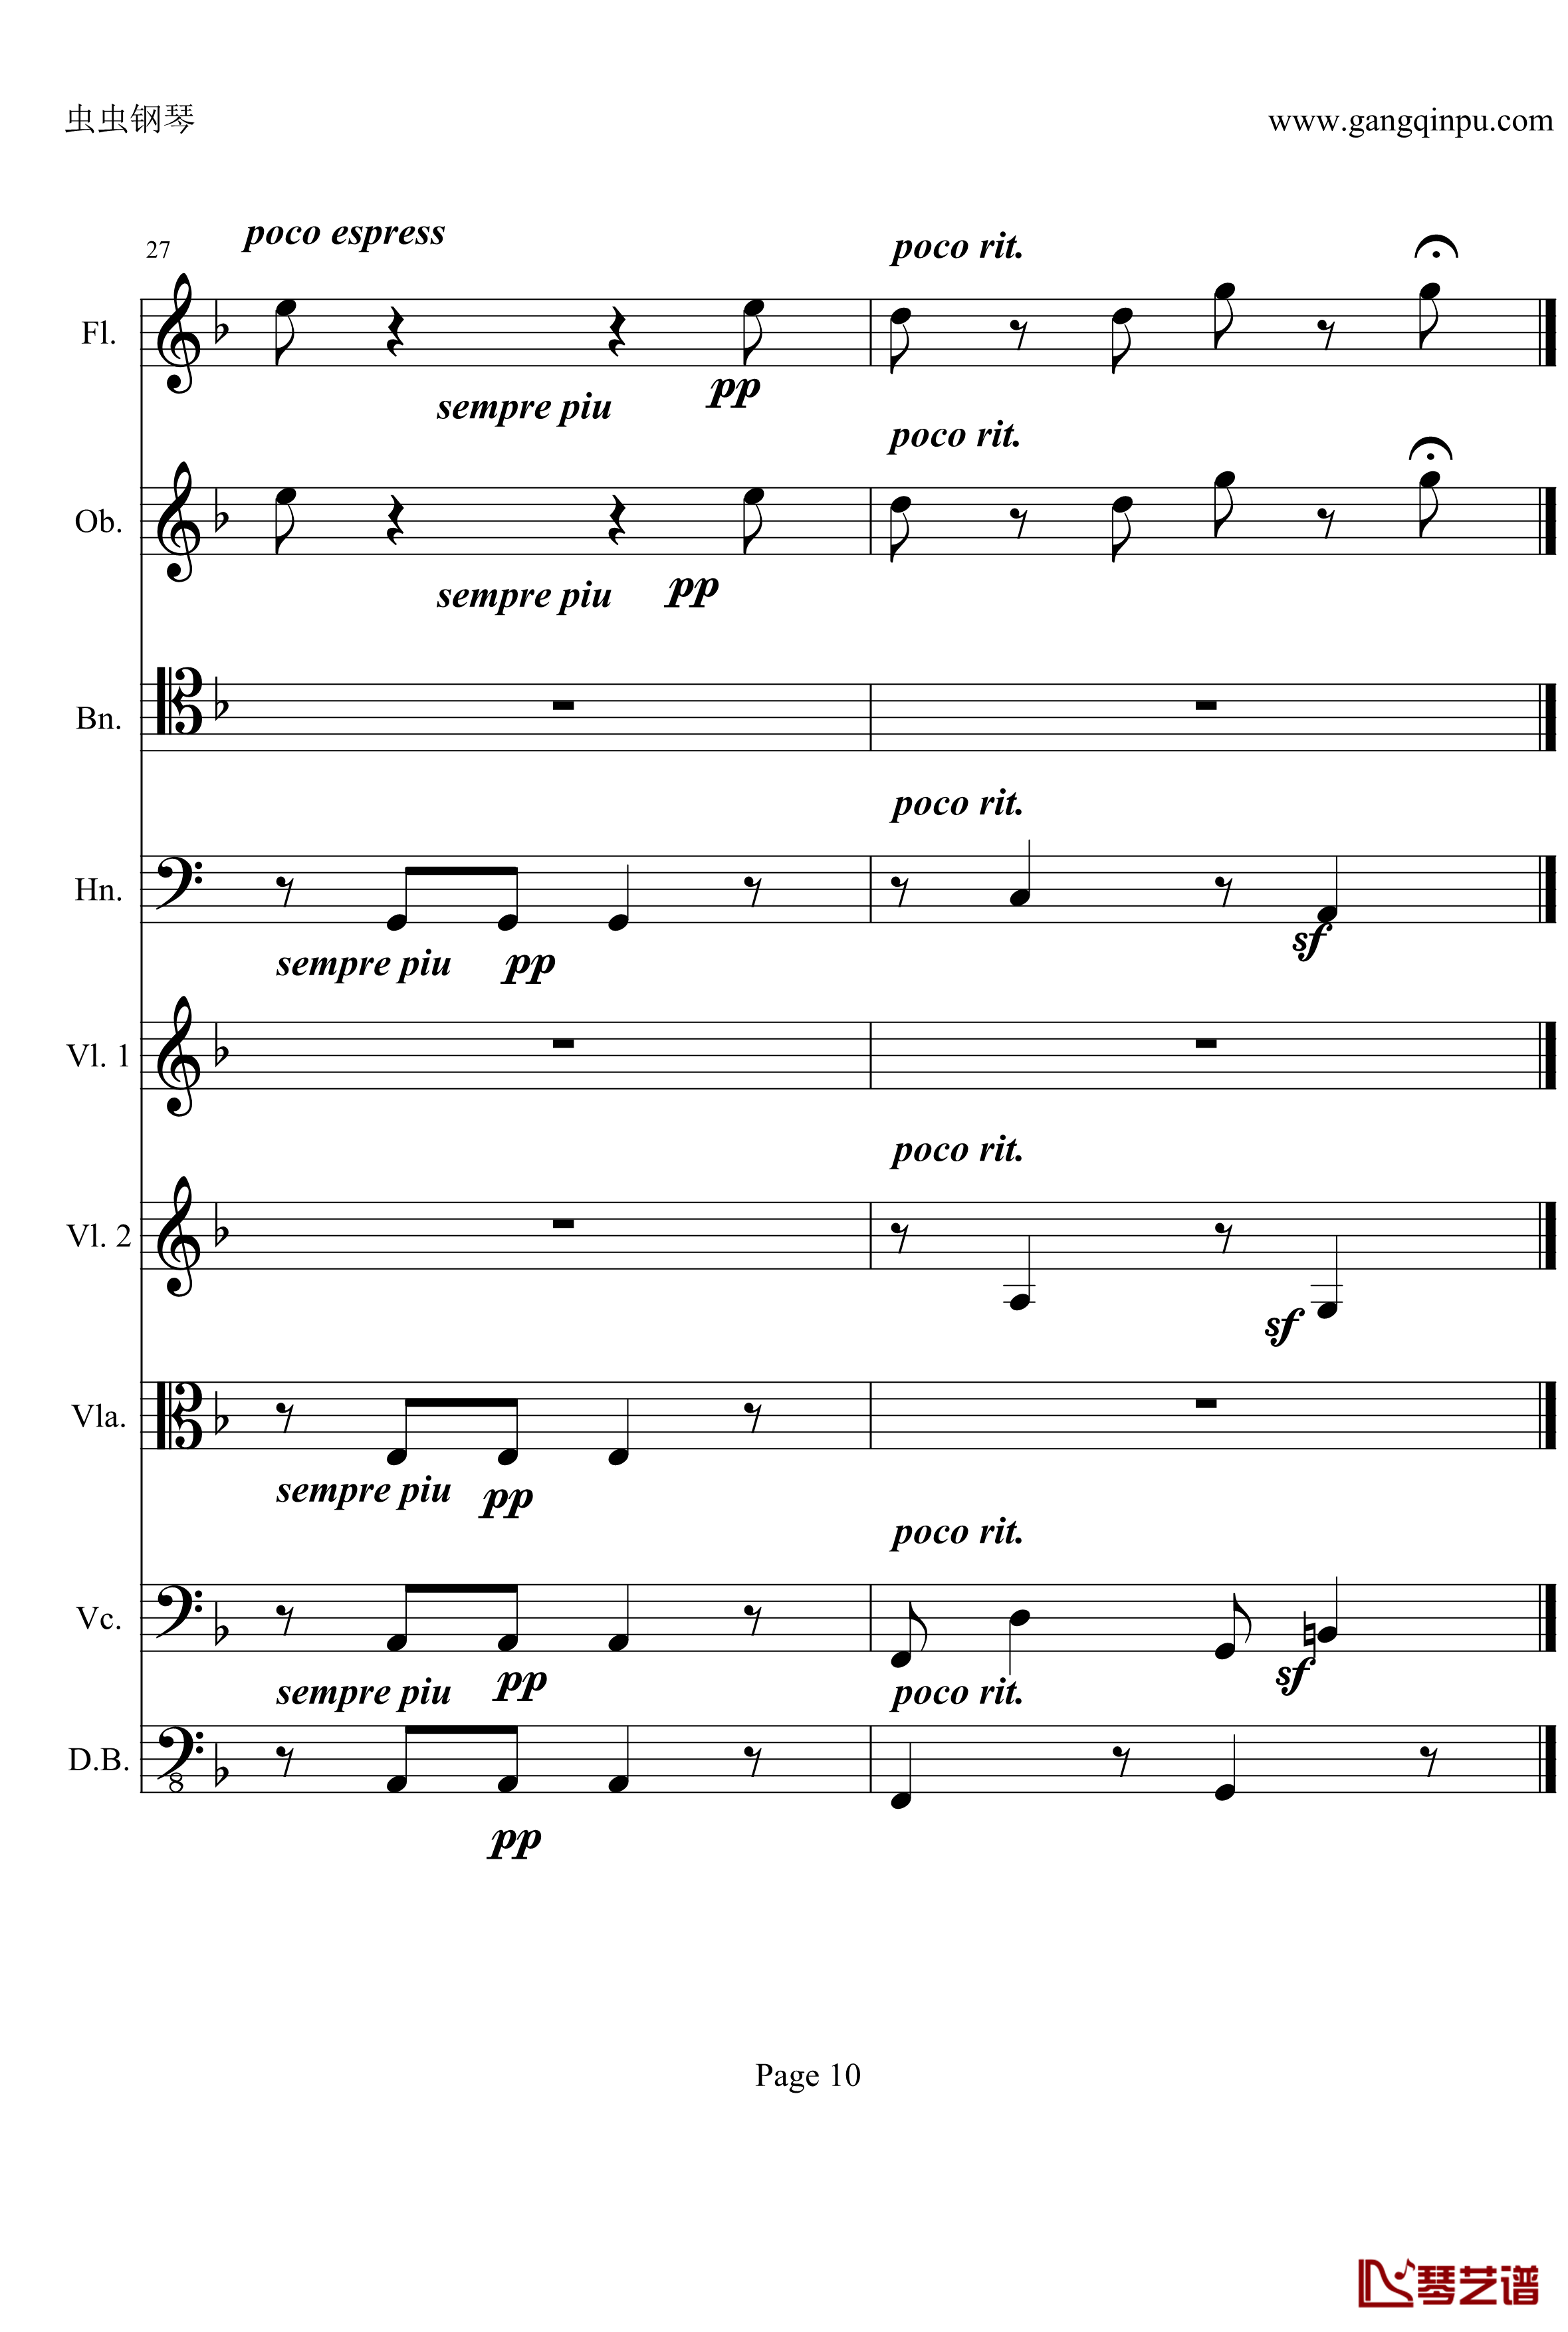 奏鸣曲之交响钢琴谱-第21-Ⅱ-贝多芬-beethoven10